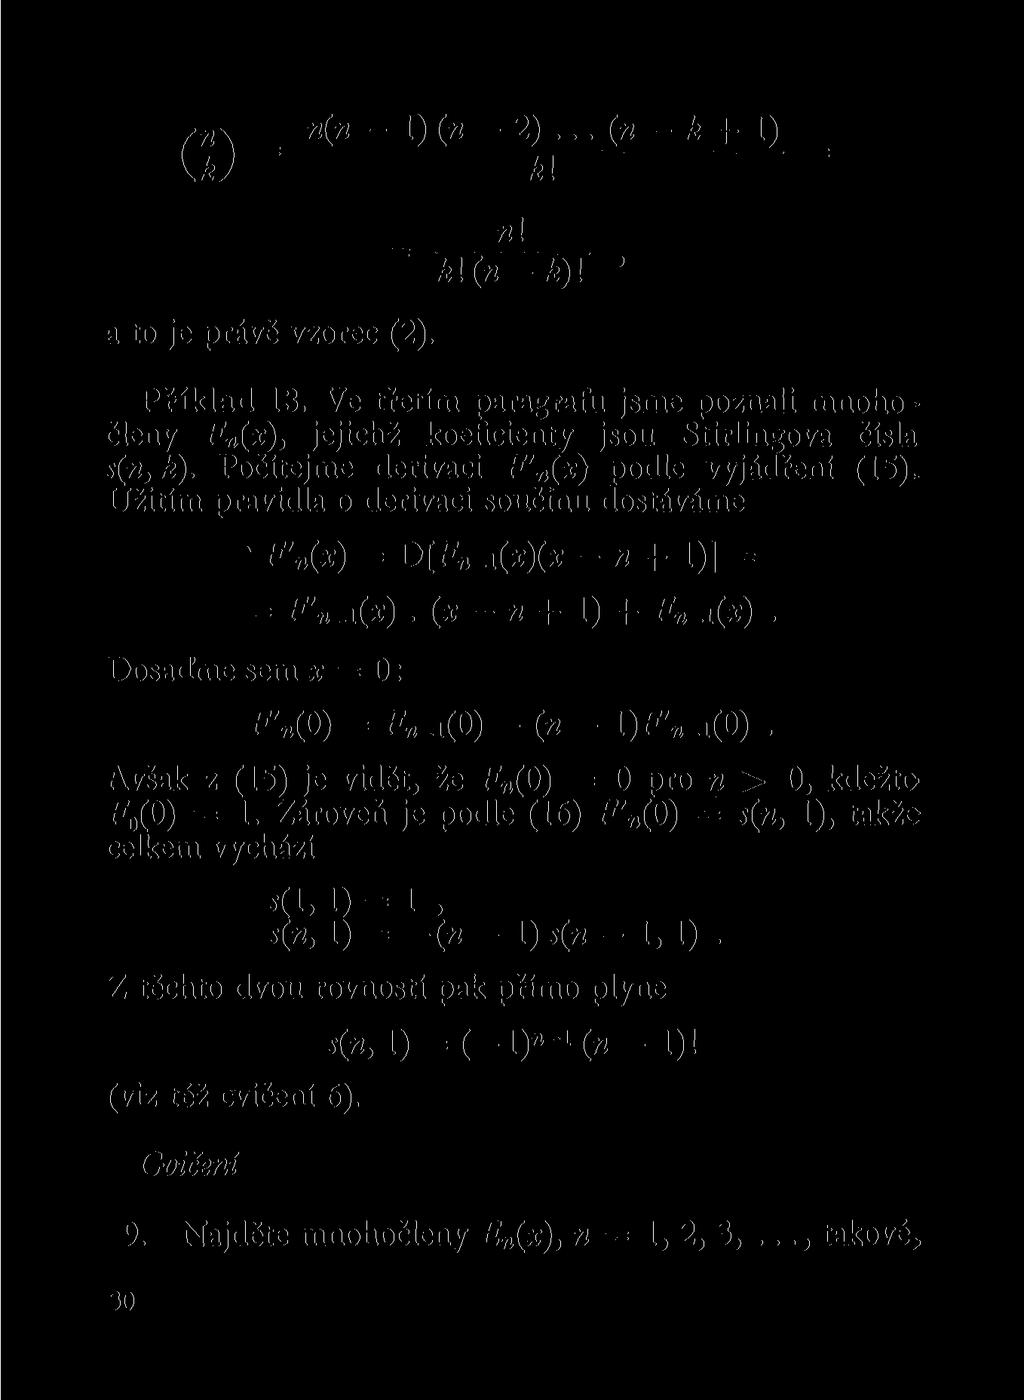 ,\ _ < - 1) ( - 2)... ( - k + 1) _ U; k\ = ~k\(-k)\ ' a to je právě vzorec (2). Příklad 13. Ve třetím paragrafu jsme pozali mohočley F (x), jejichž koeficiety jsou Stirligova čísla s(, k).